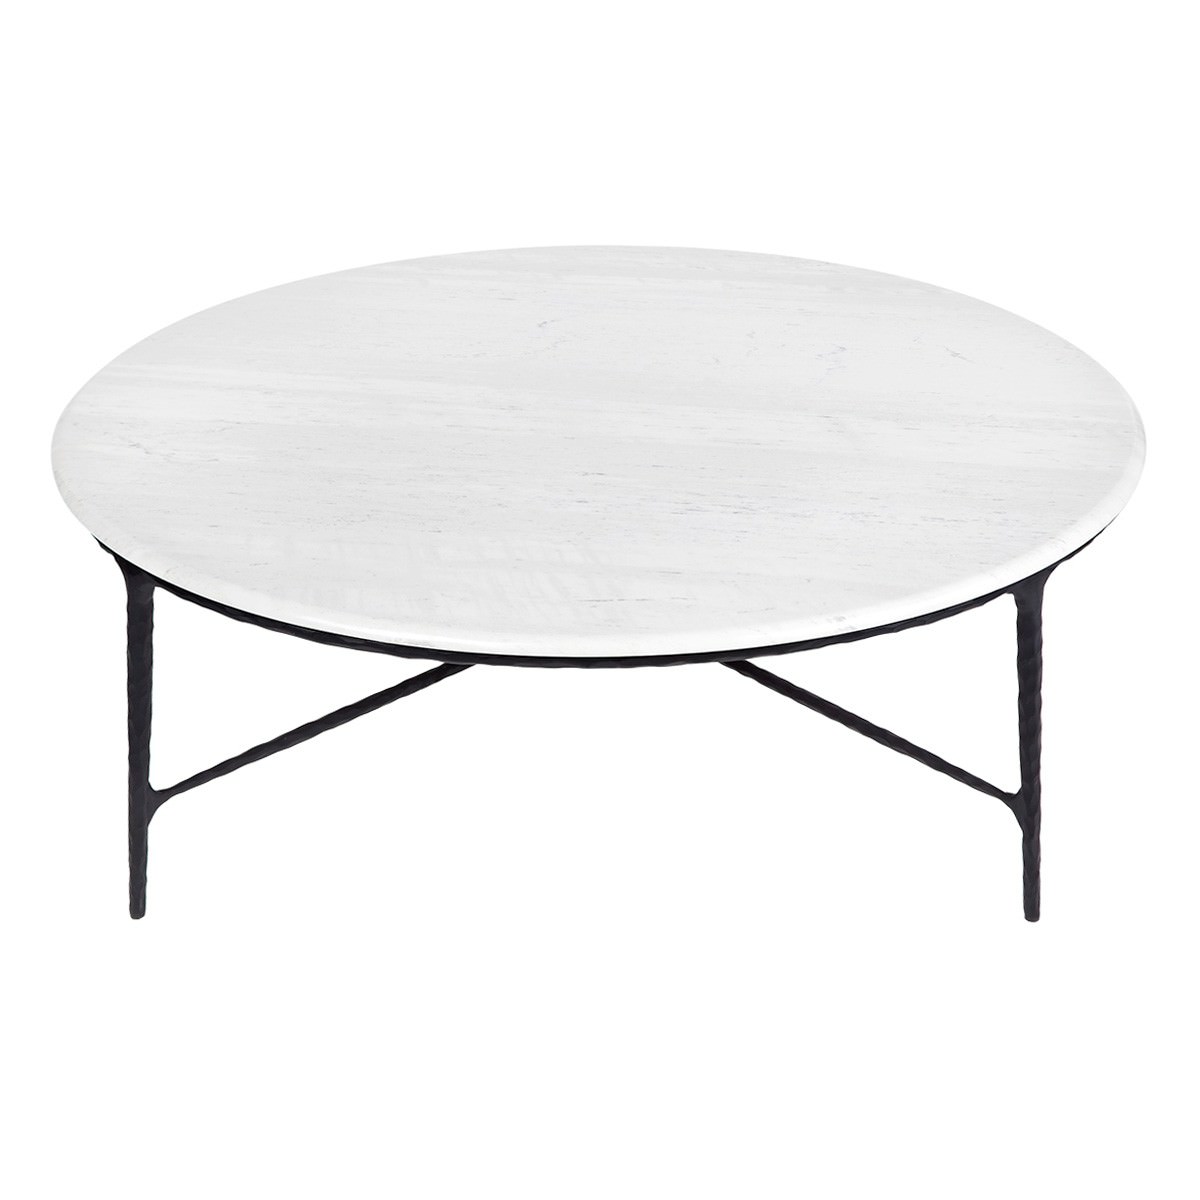 Heston Marble Topped Iron Round Coffee Table, 120cm, White / Black